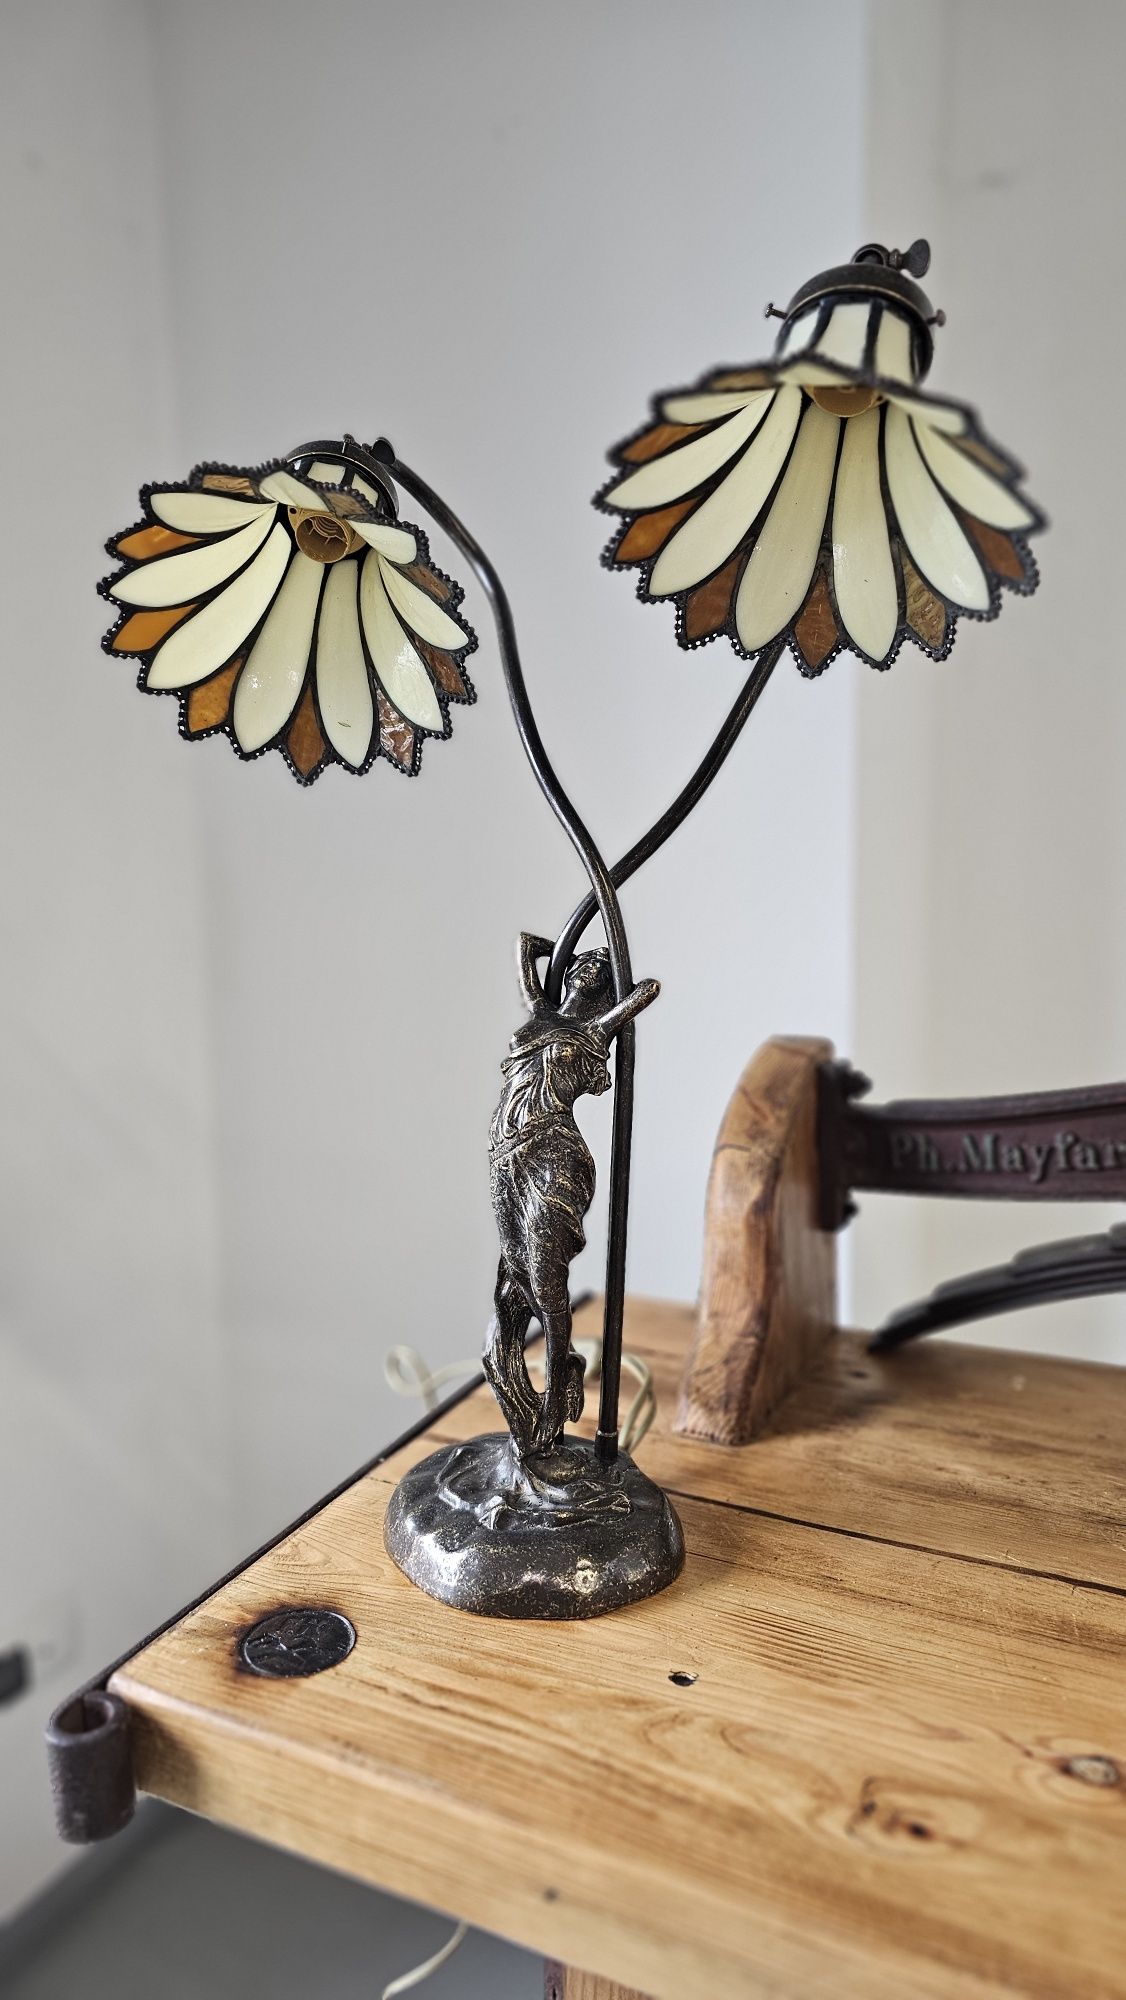 Lamp figuralna  z  mosiądzu  piękne klosze.